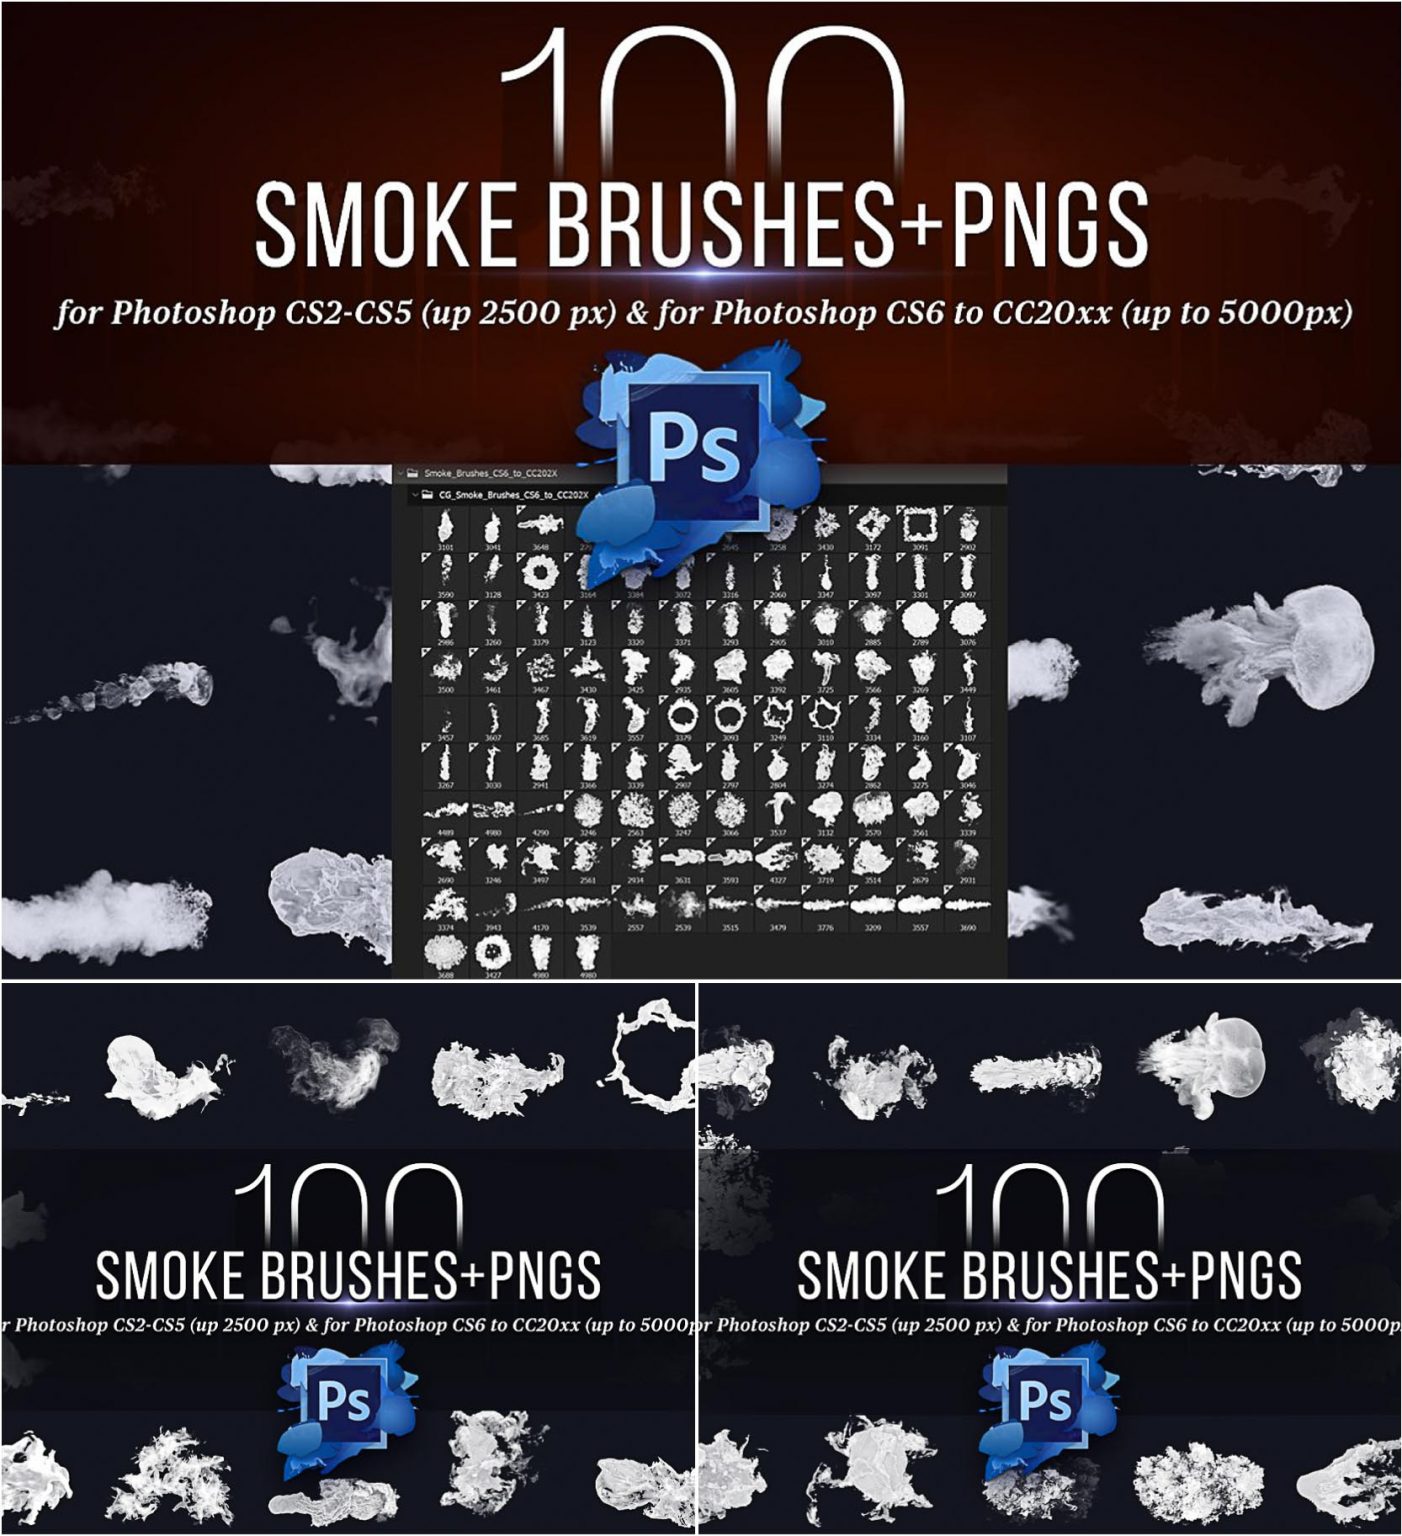 adobe photoshop smoke brush download